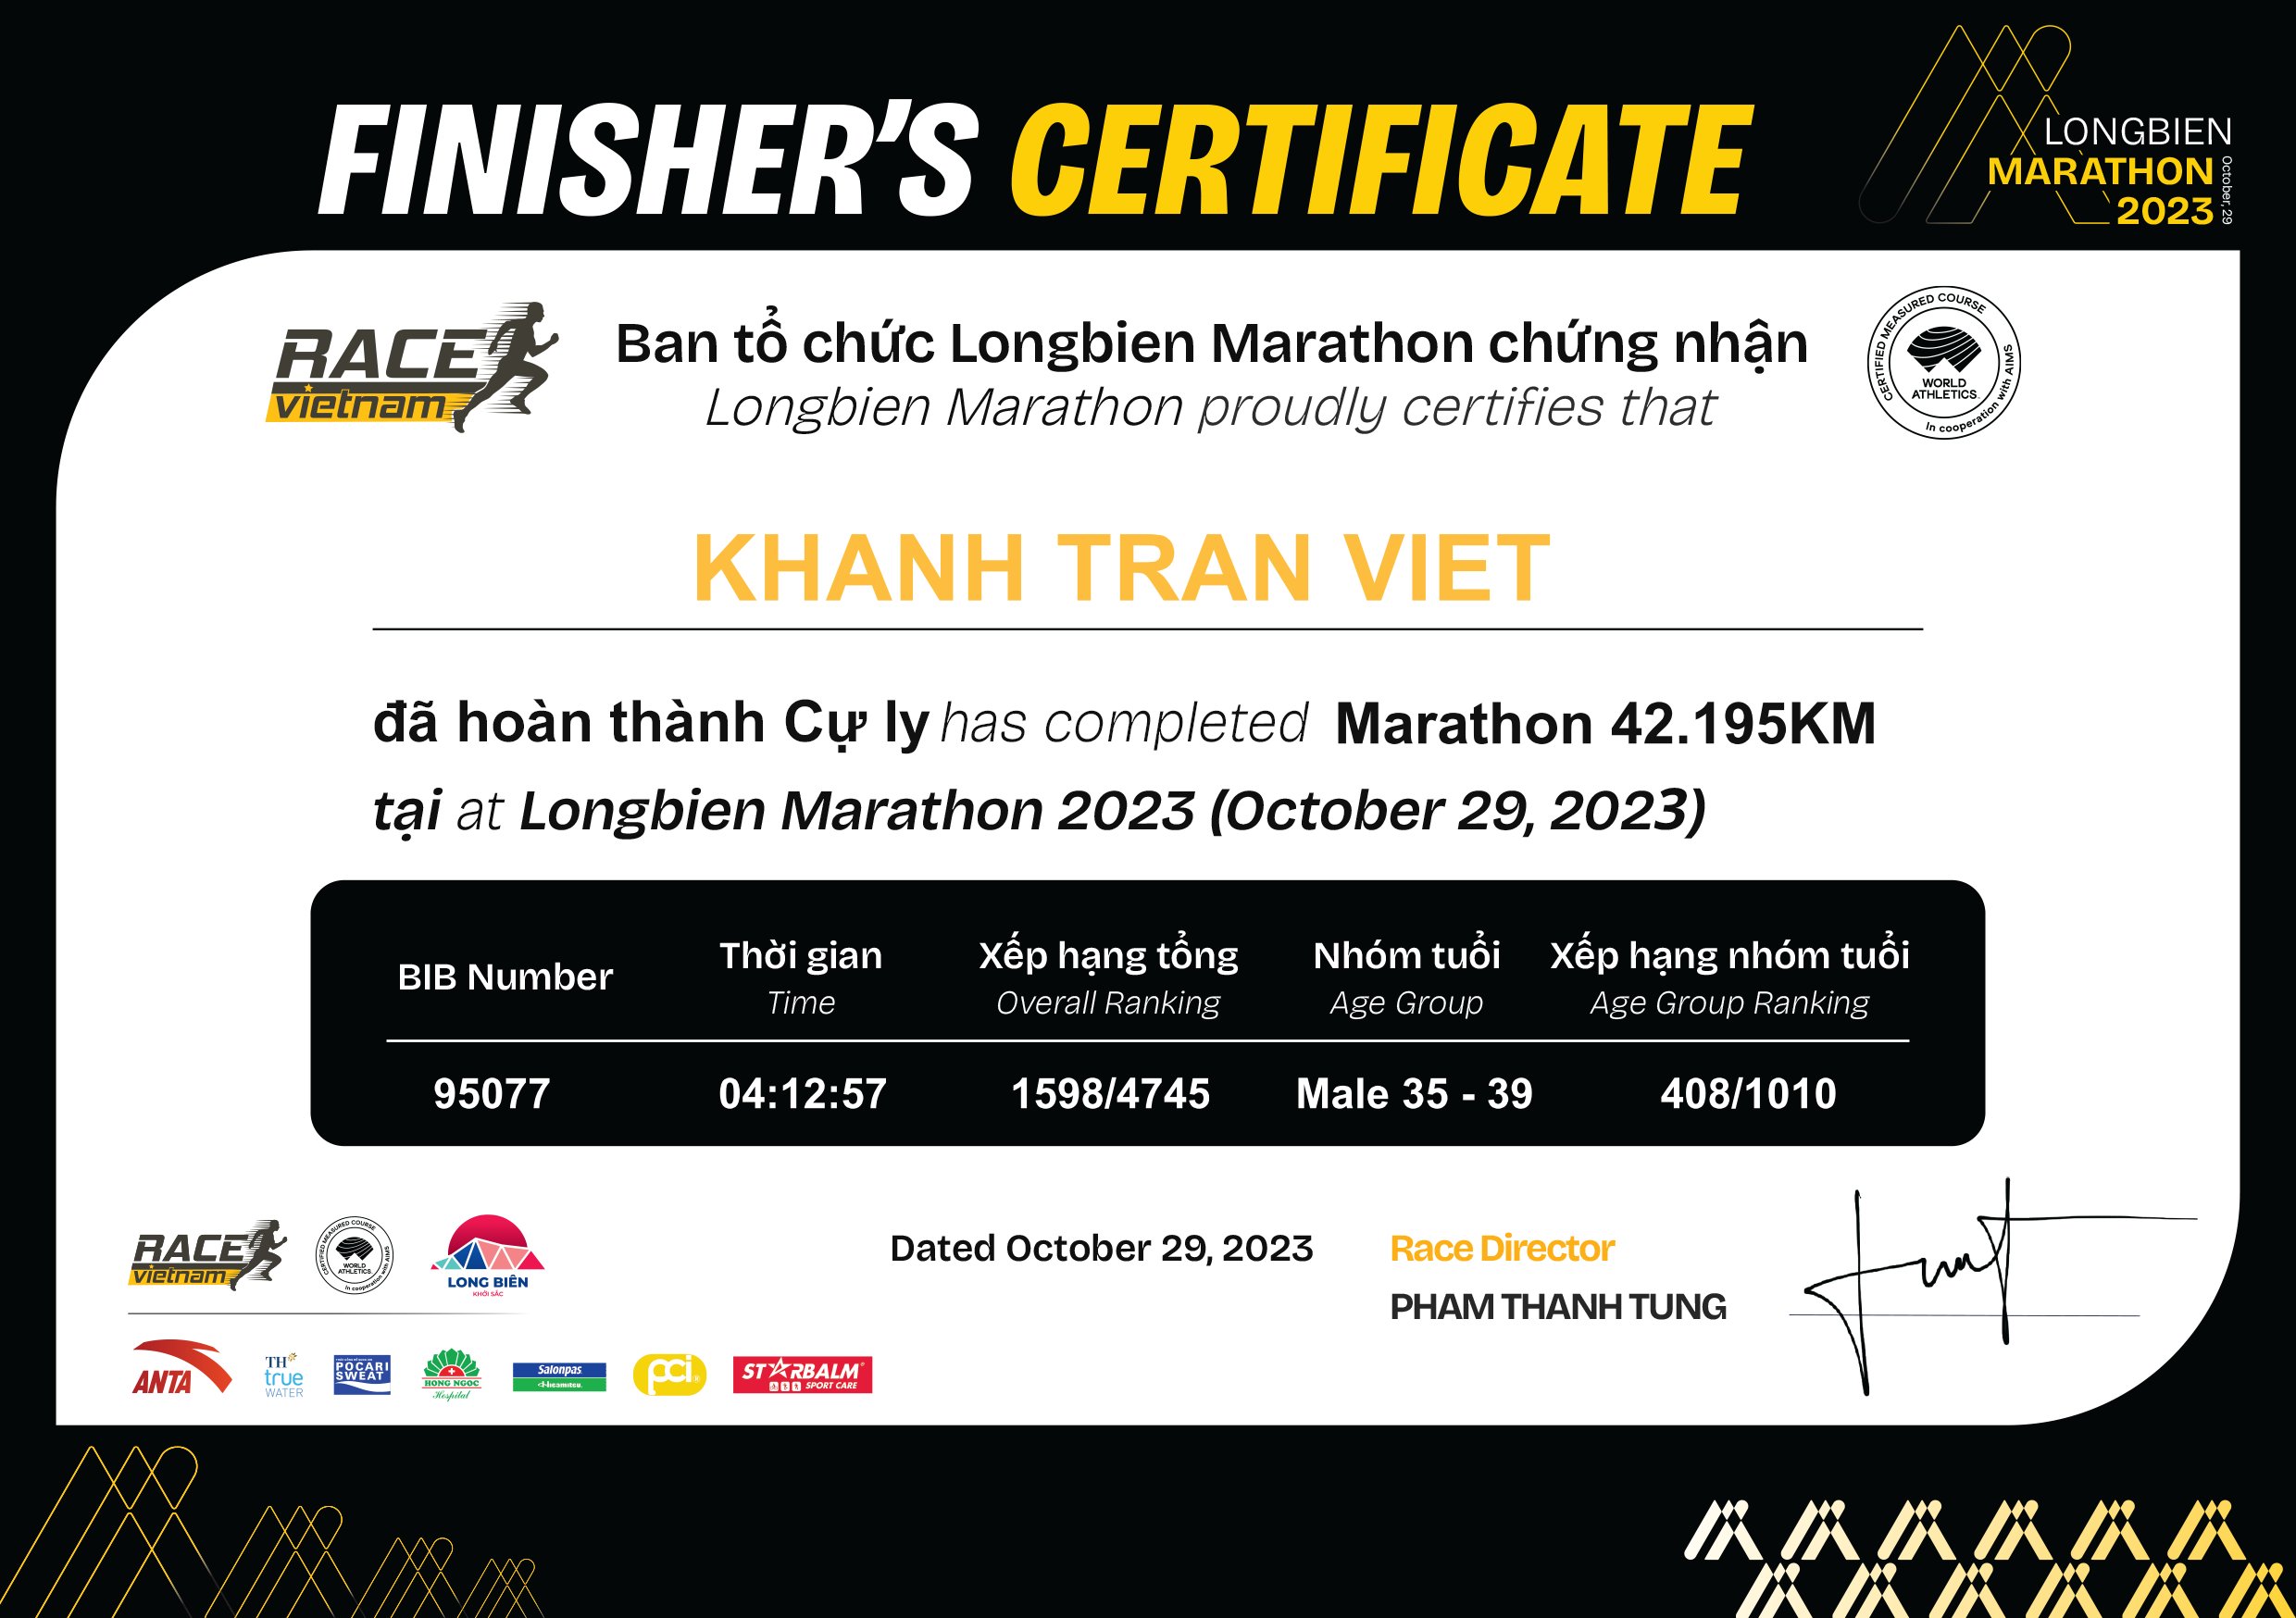 95077 - Khanh Tran Viet